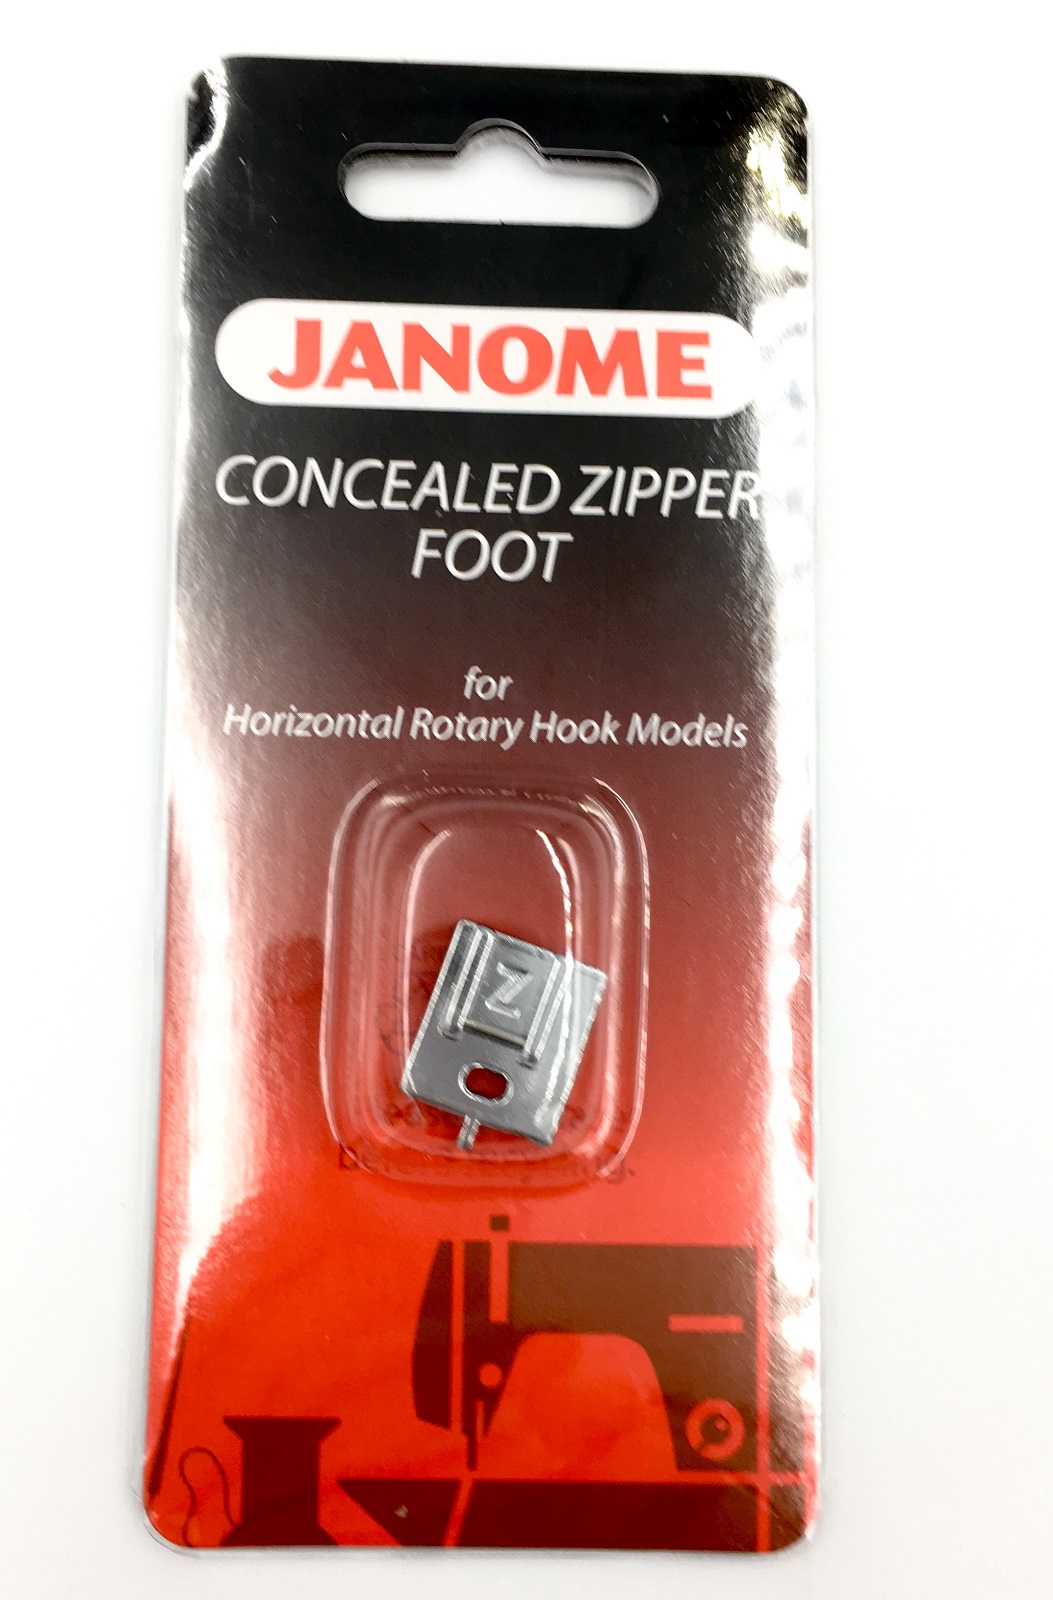 Zip Foot (concealed) - 200333001 / 202144009